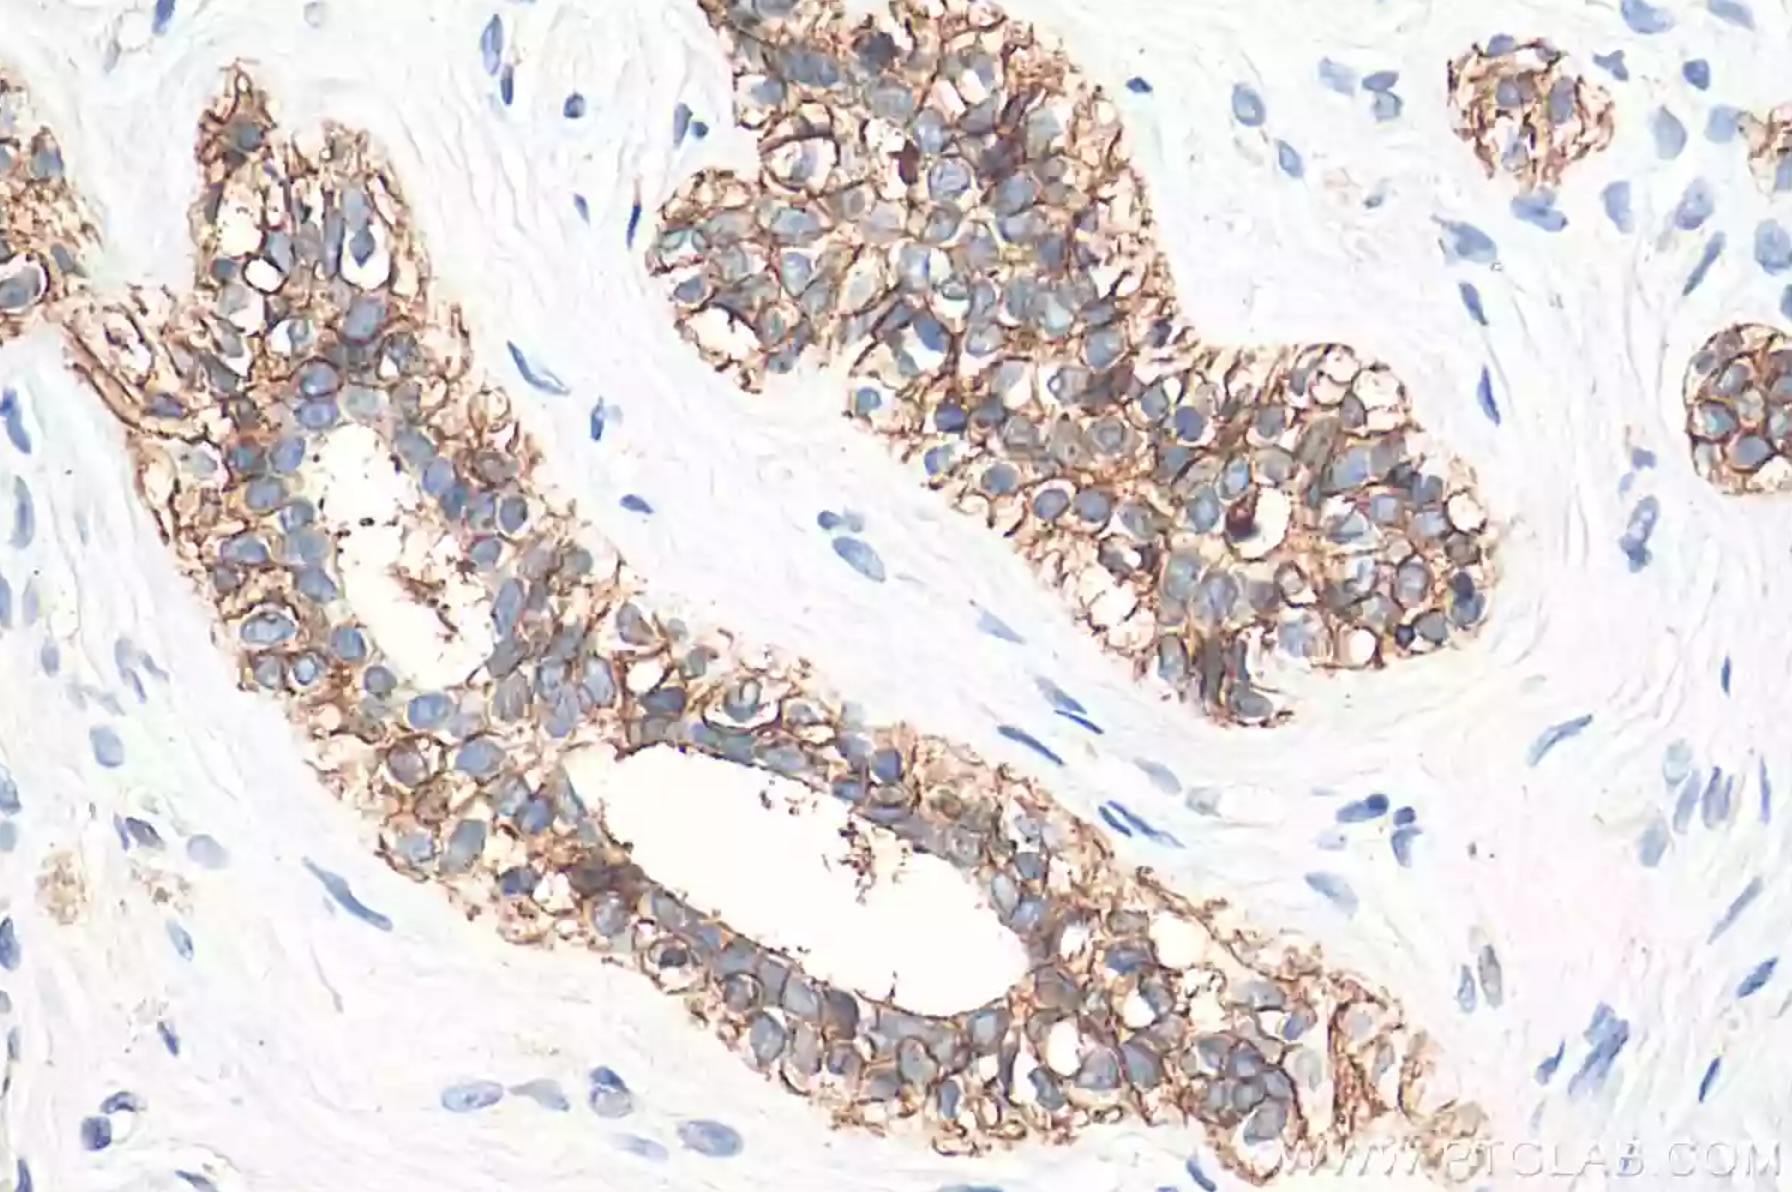 E-カドヘリン抗体を使用したパラフィン包埋ヒト乳がん組織スライドの免疫組織化学染色。